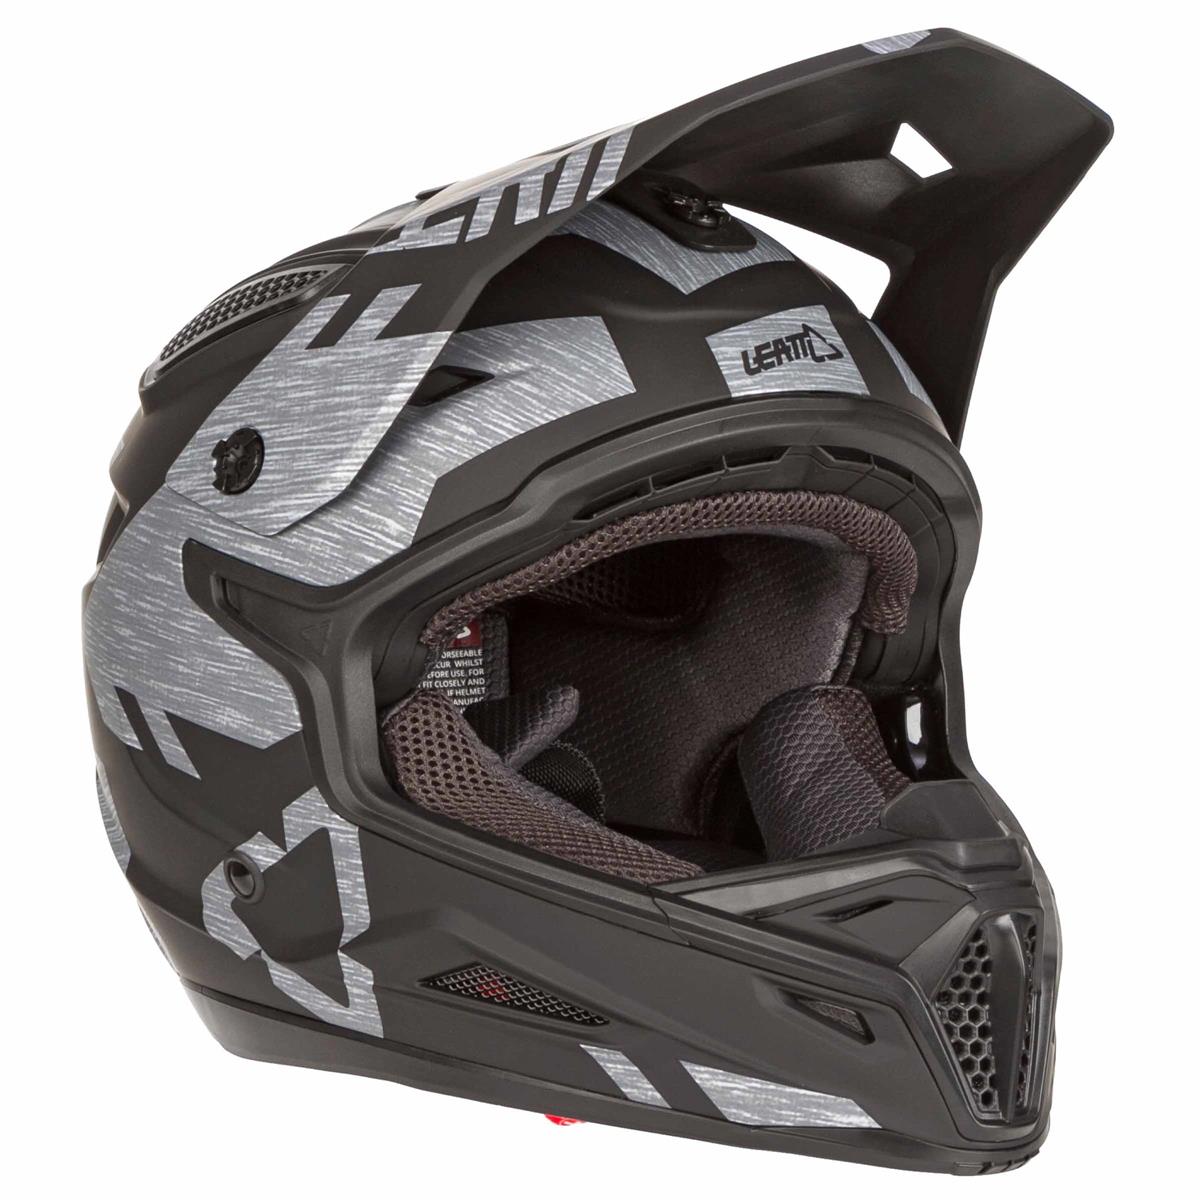 Leatt Gpx 4.5 Motocross Helmet MX Quad Enduro Dirt Bike 